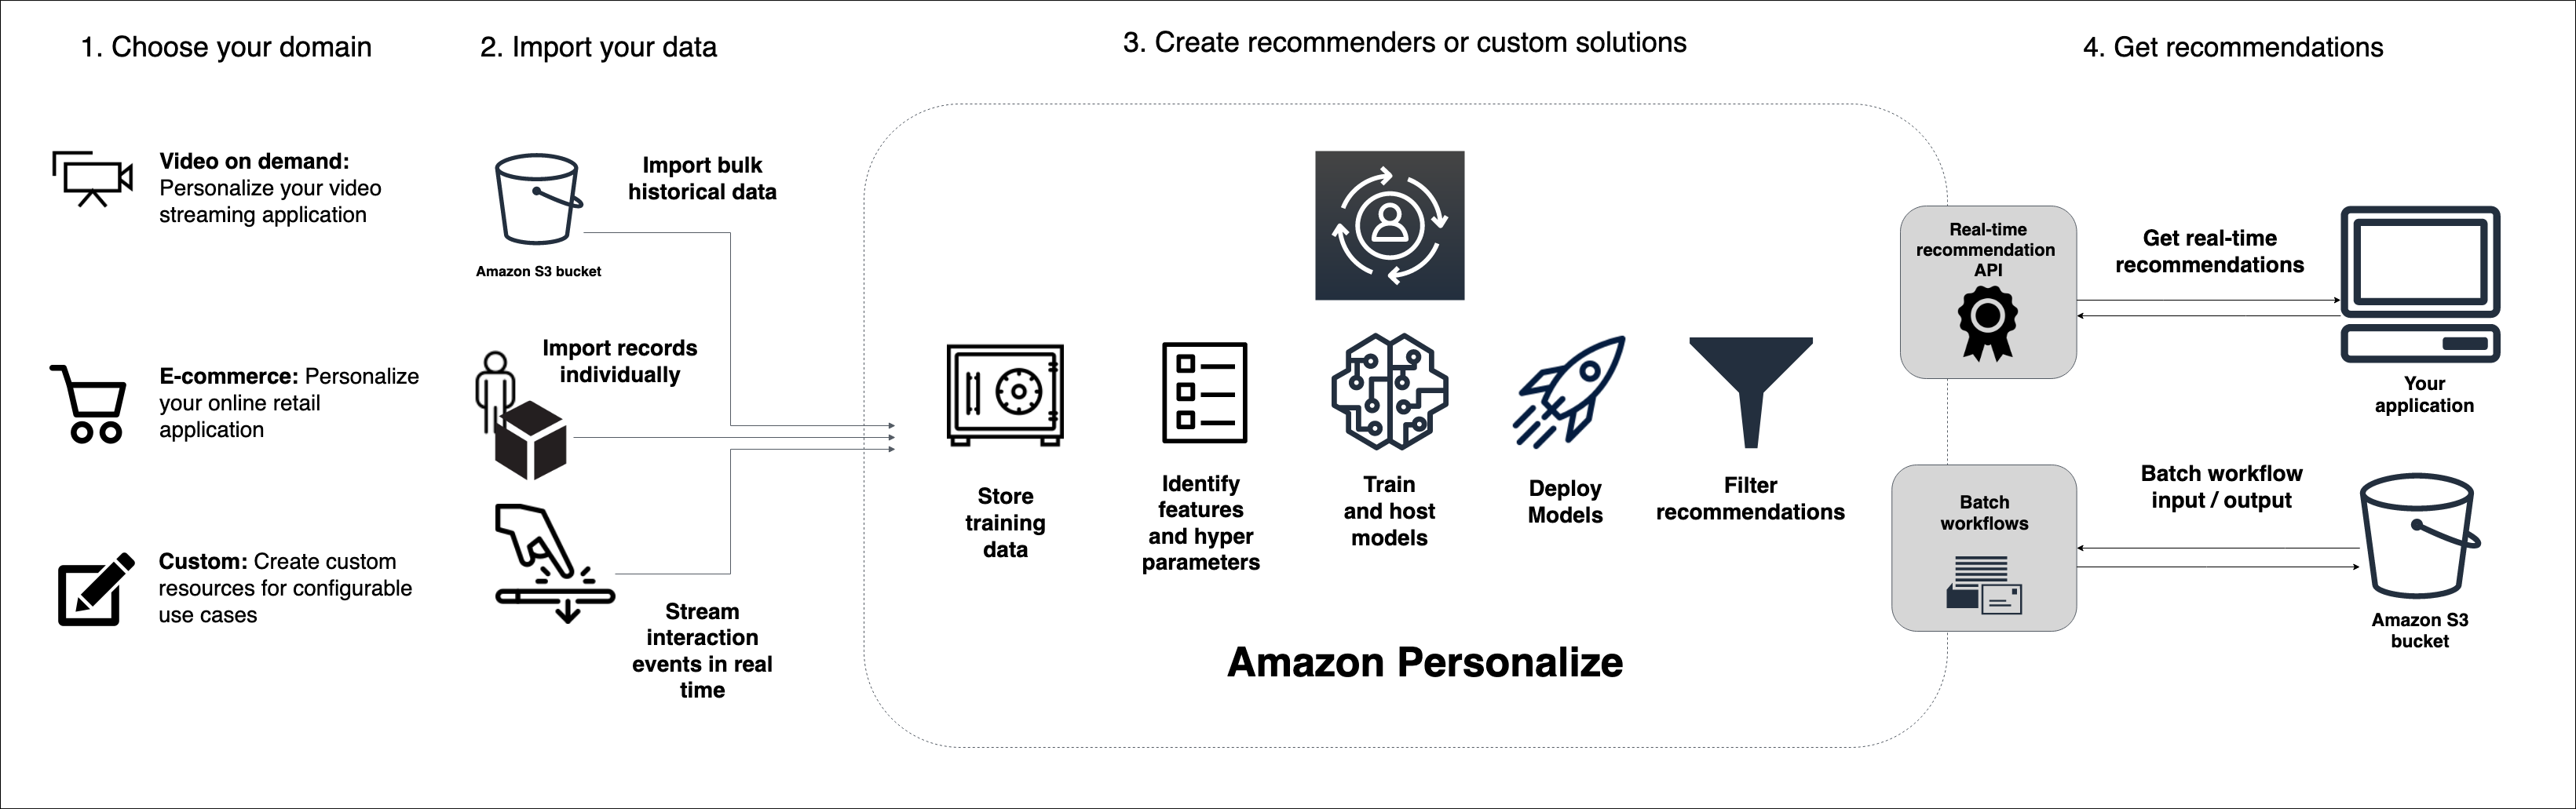 
      Mostra o fluxo de trabalho do Amazon Personalize, desde a importação de dados e treinamento de modelo até a obtenção de recomendações.
    